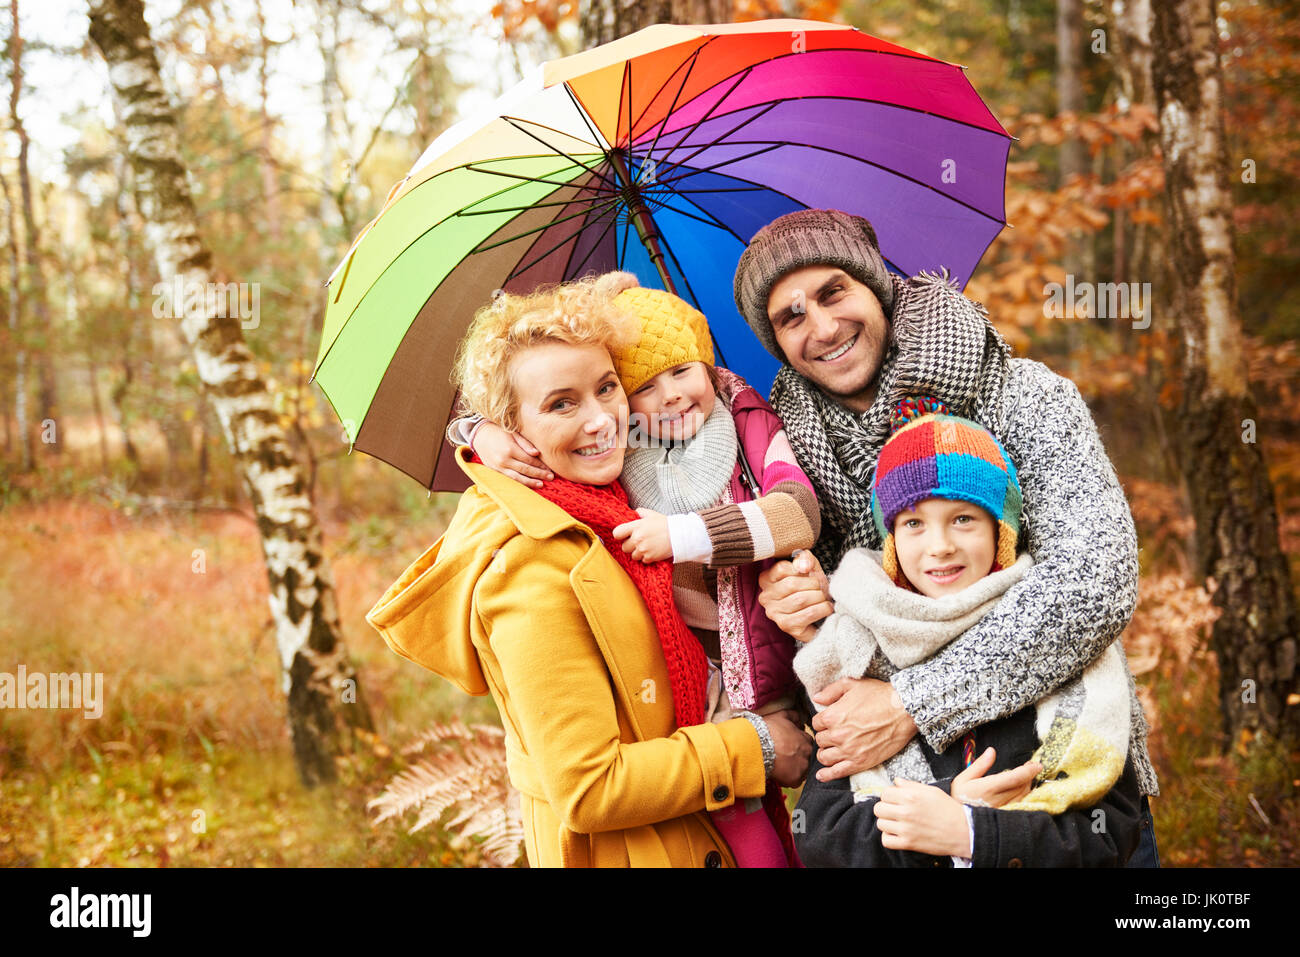 Зонтик семьи. Семья под зонтом. Фотосессия семейная осенью с зонтиками. Осенняя фотосессия семейная с зонтиками.